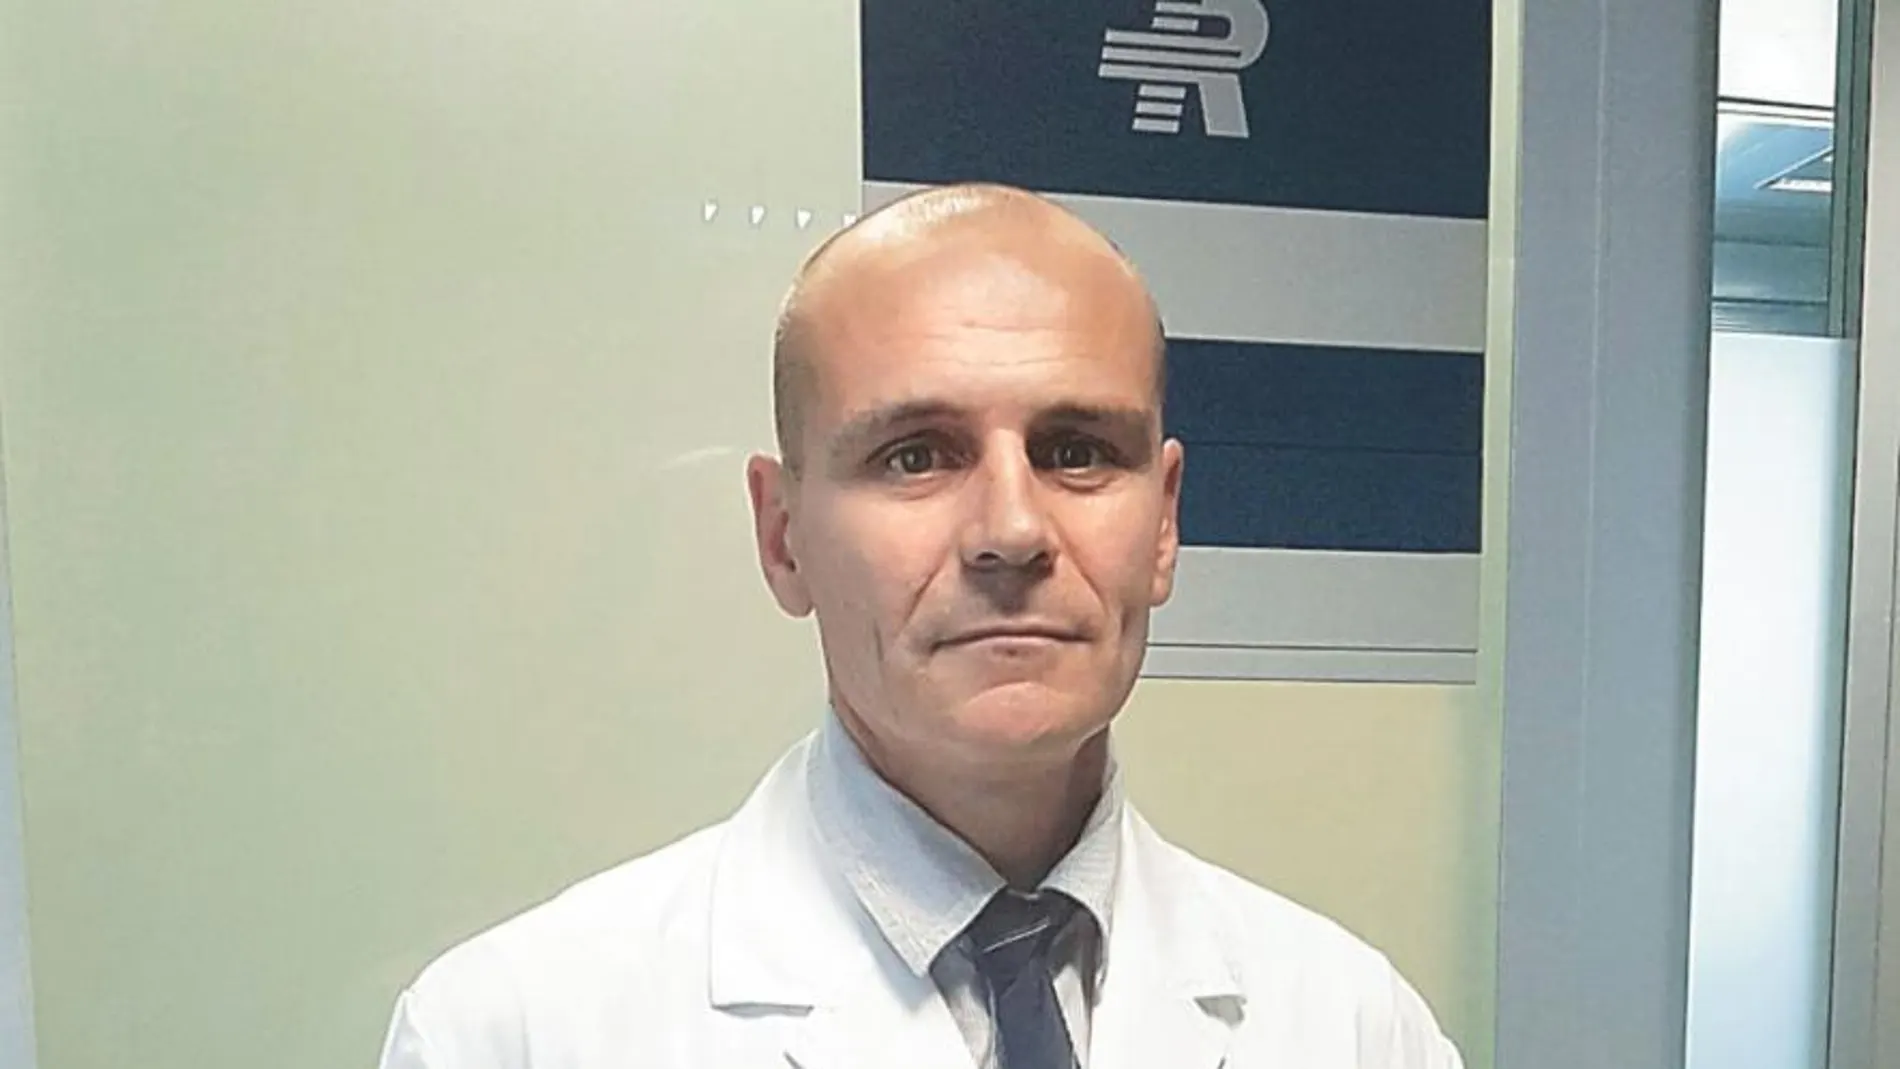 Dr. Cristófol Vives/ Asesor científico del Servicio de Genética Humana de Clínica Rotger y Hospital Quirónsalud Palmaplanas (Mallorca)